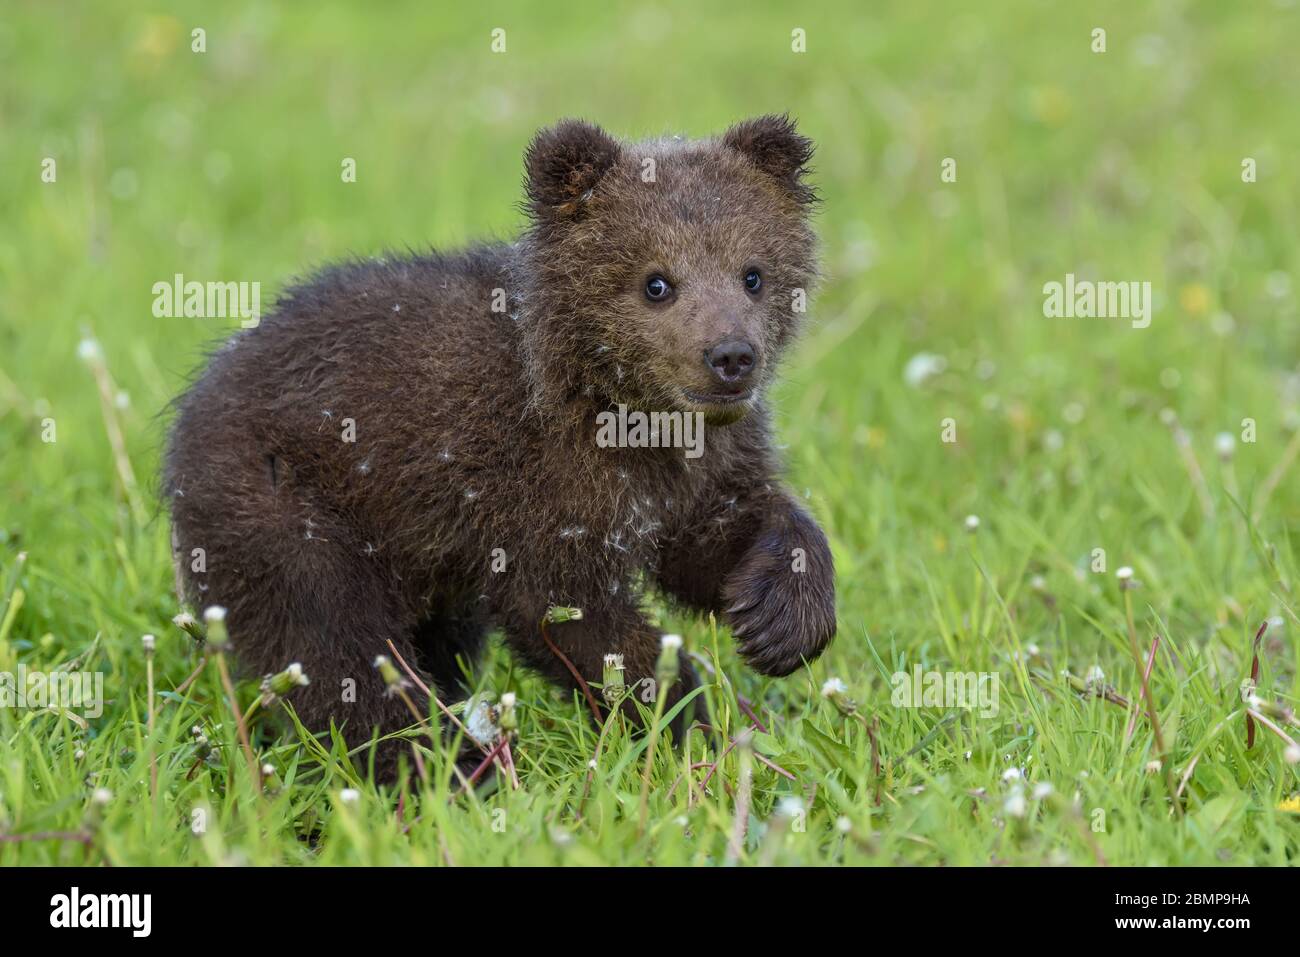 Porter le cub dans l'herbe de printemps. Dangereux petit animal dans la nature habitat de prairie. Scène de la faune Banque D'Images